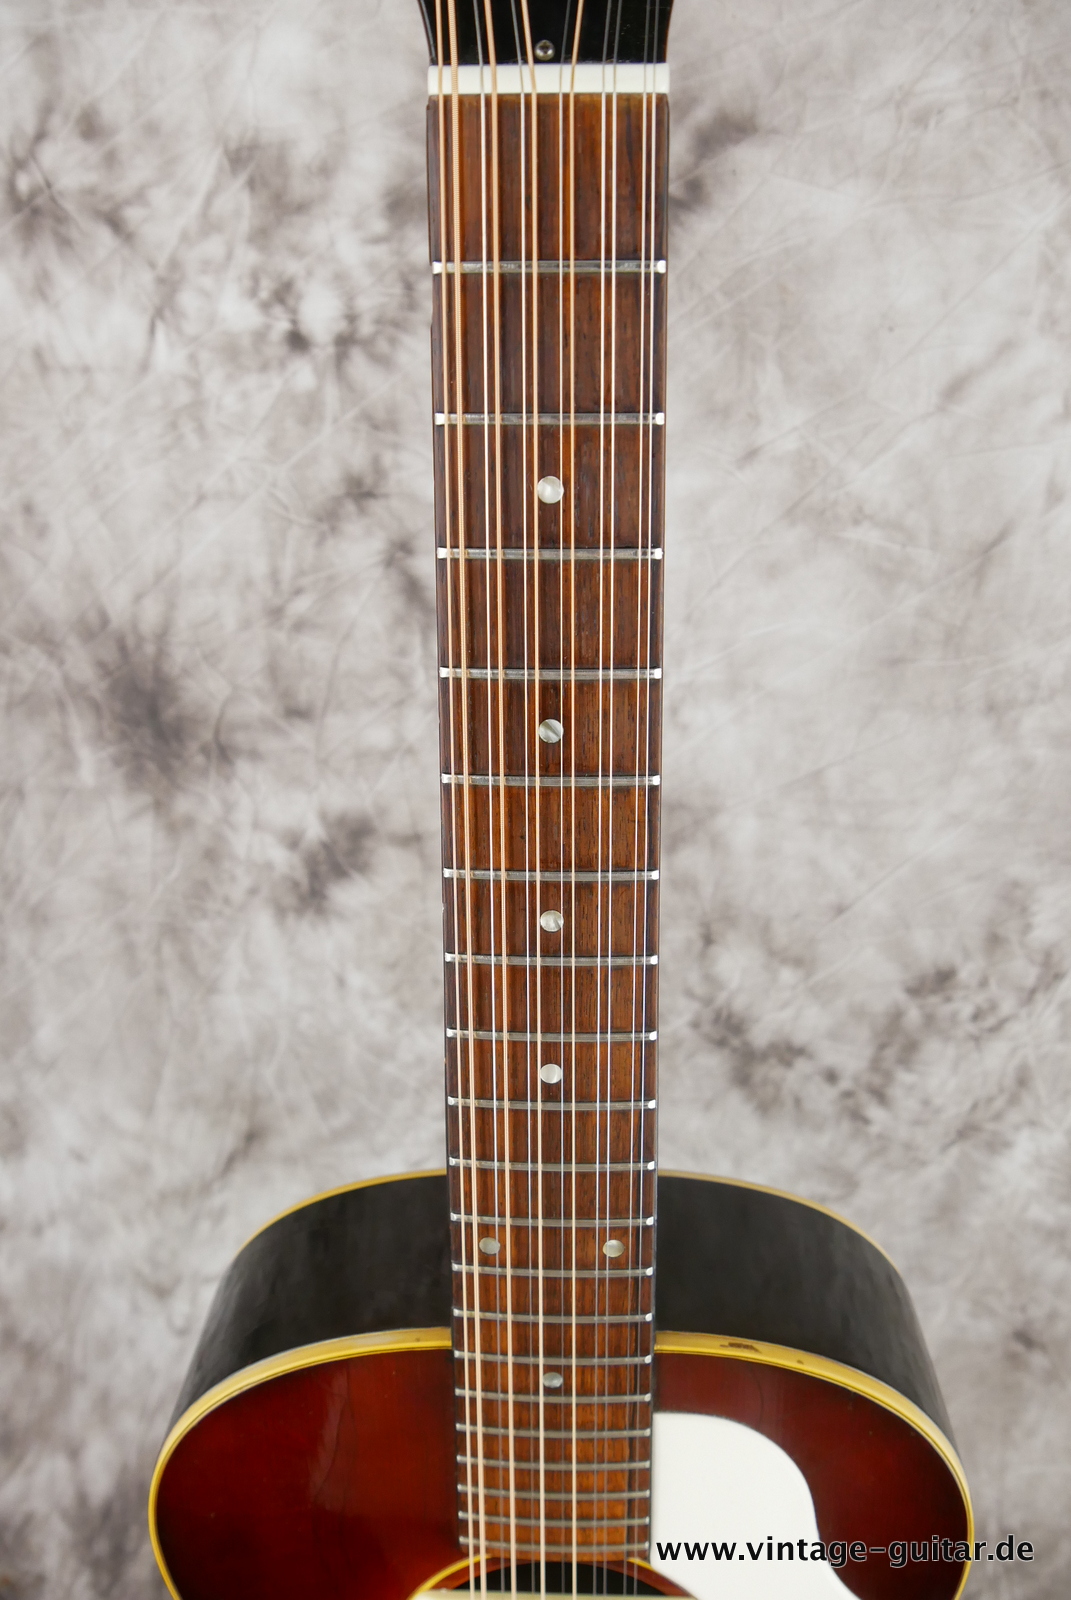 Gibson-B-25-12-string-1967-sunburst-007.JPG